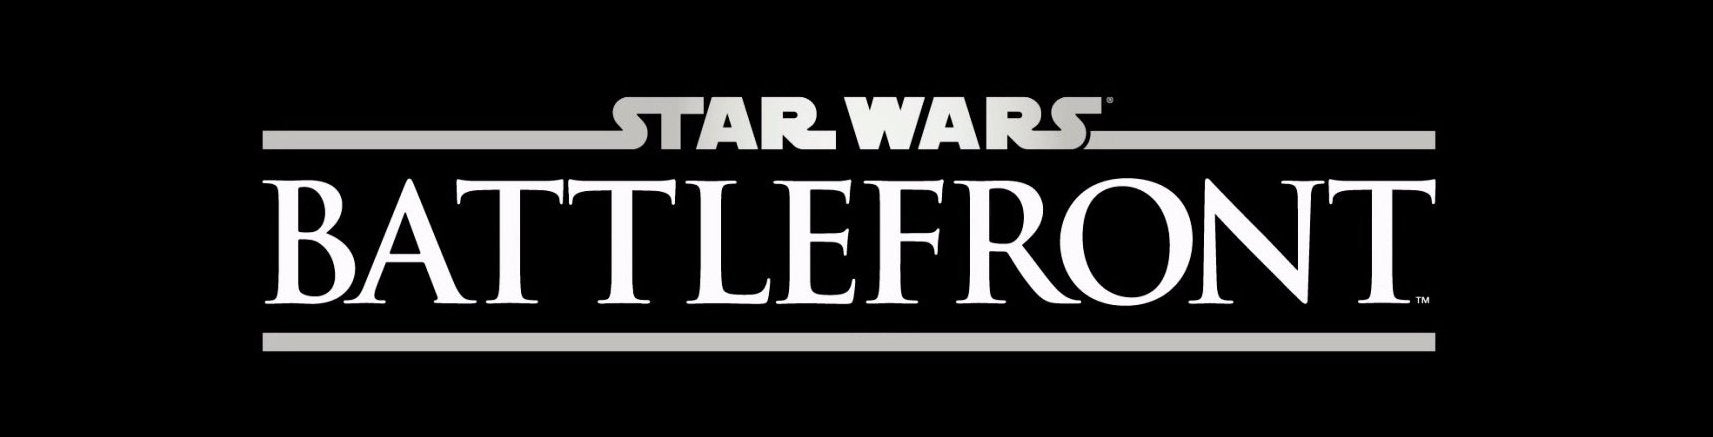 Afbeeldingen van Star Wars Battlefront komt uit tijdens kerst 2015